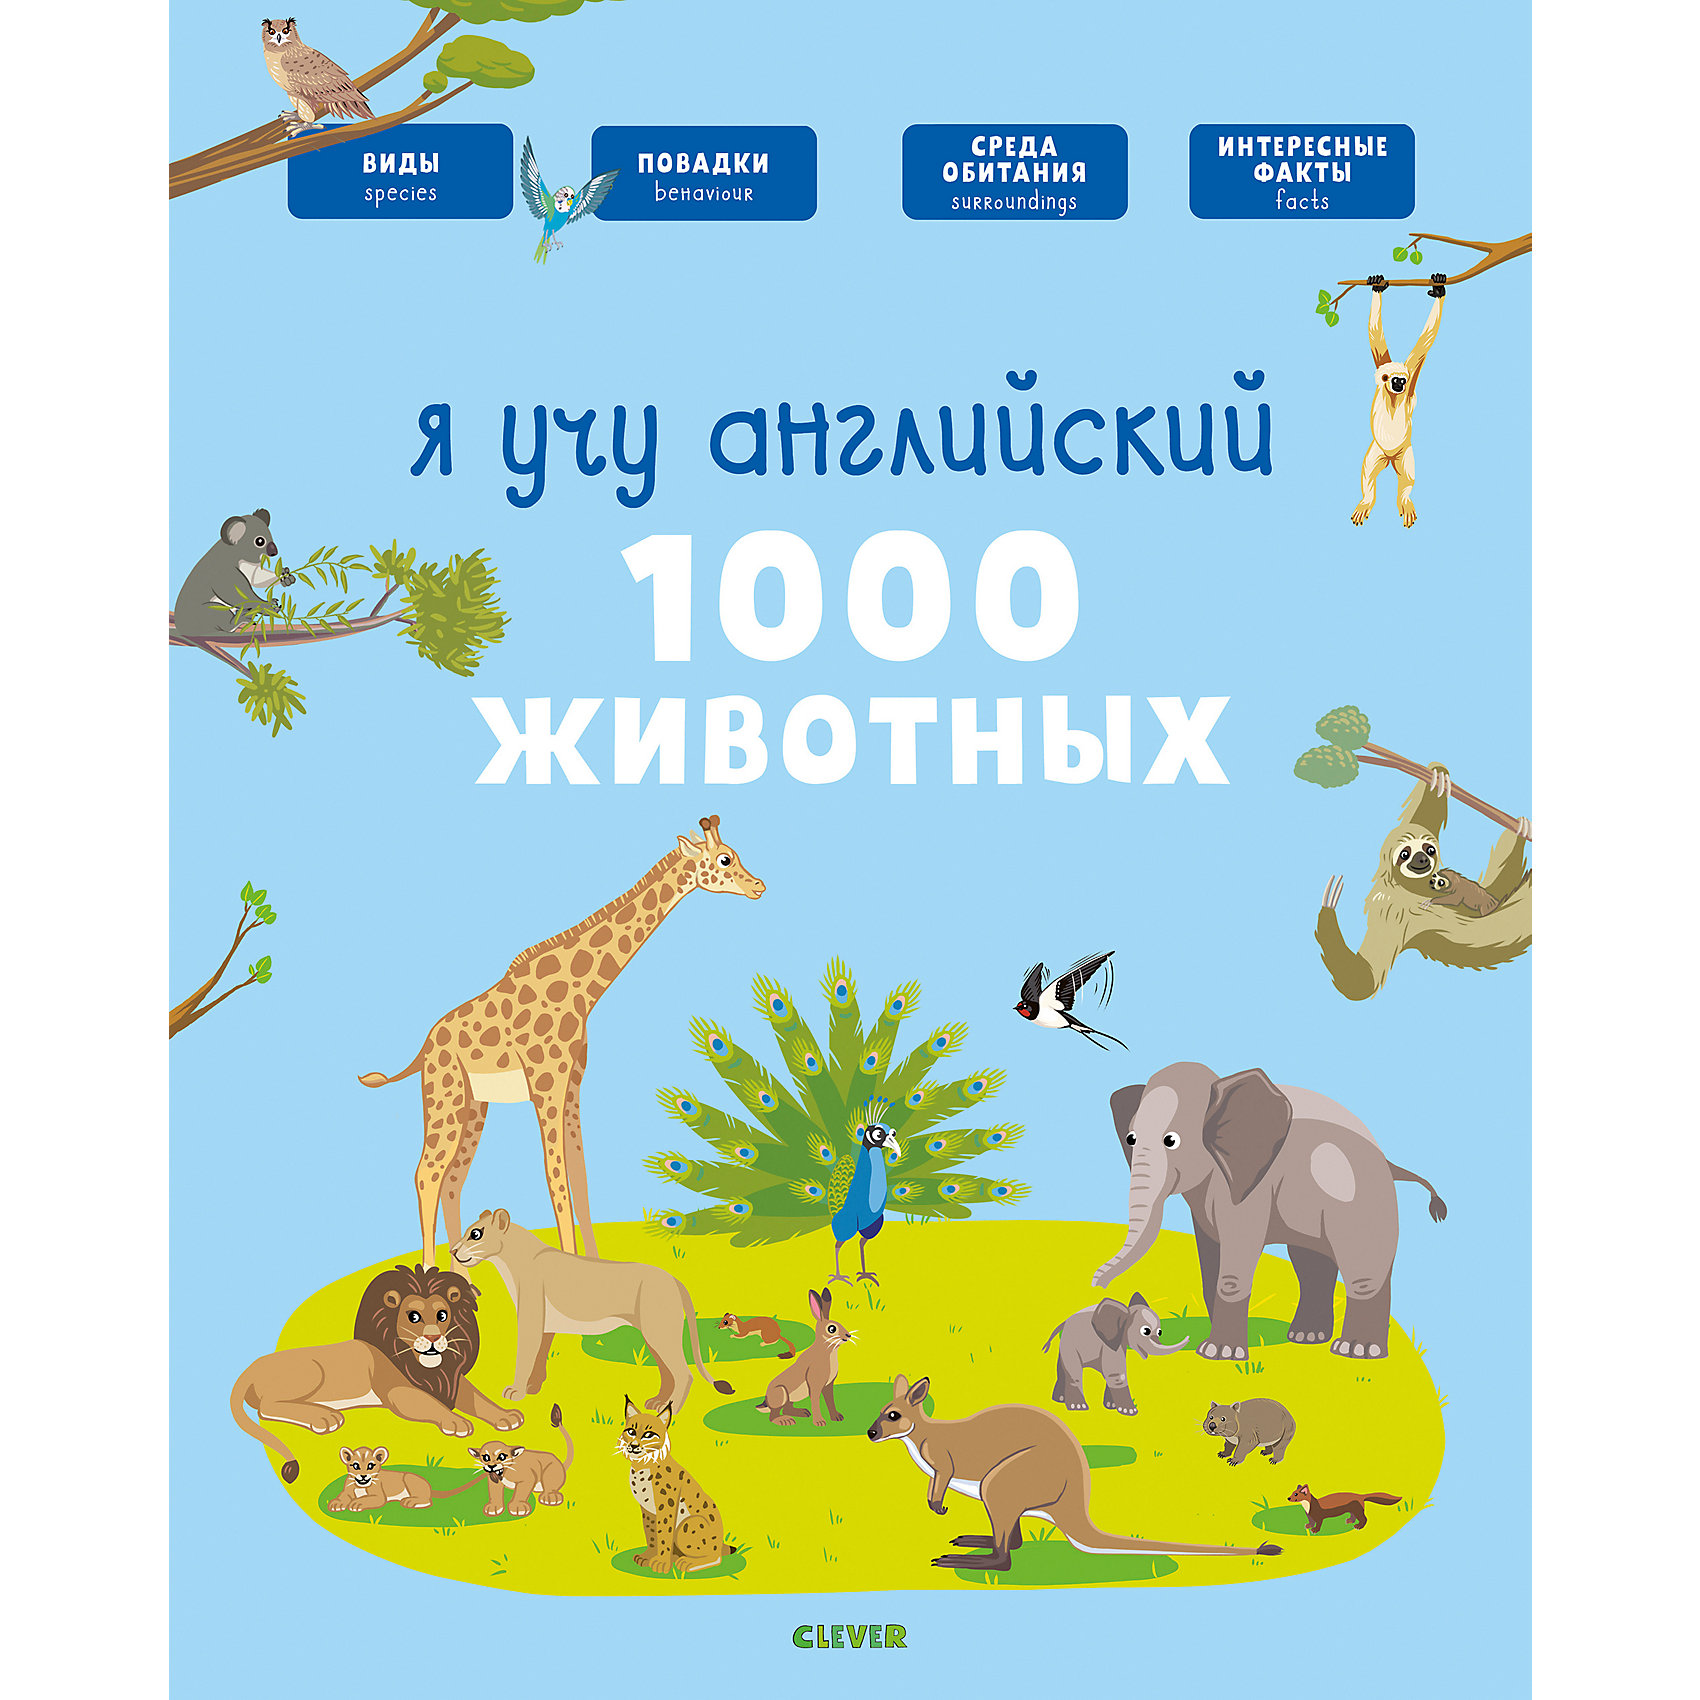 фото Книга-игра "Главная книга малыша" Я учу английский. 1000 животных, А. Бессон Clever